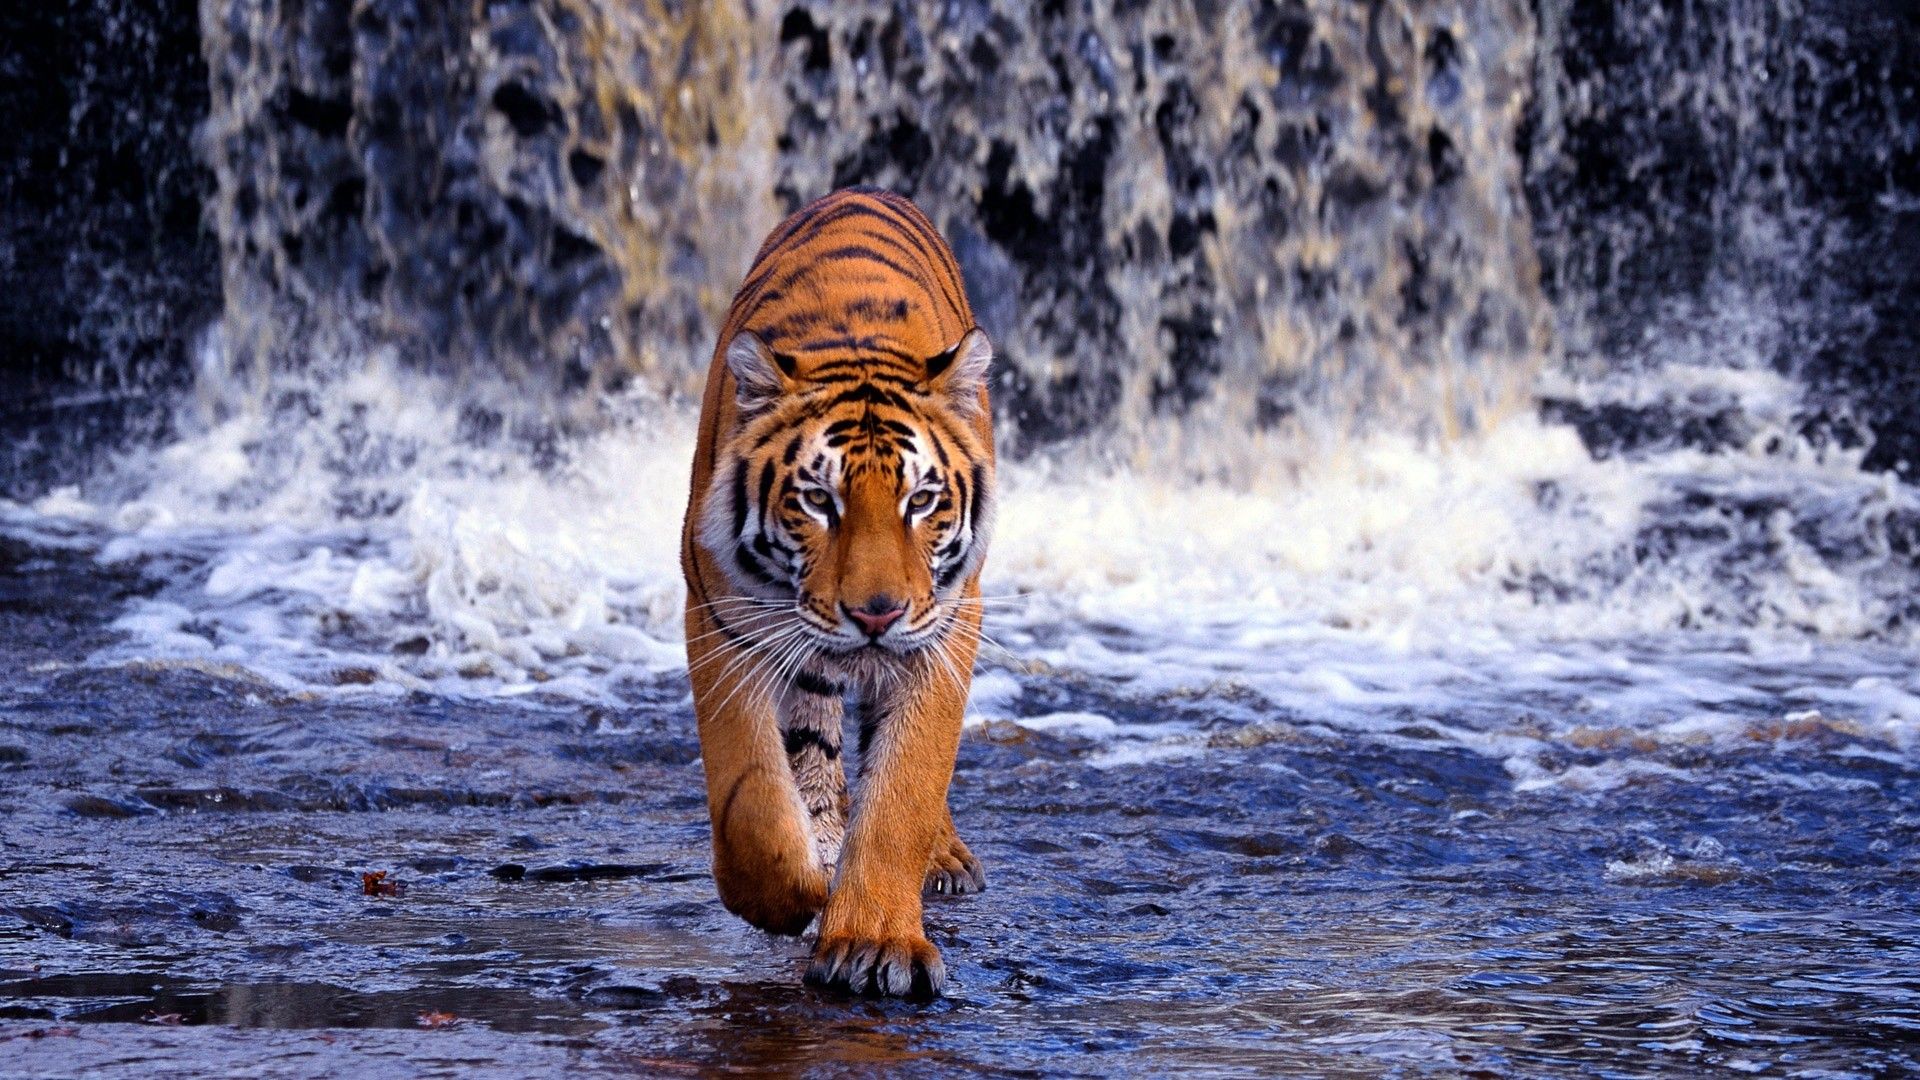 Tiger Wallpaper 3D Free Download > SubWallpaper